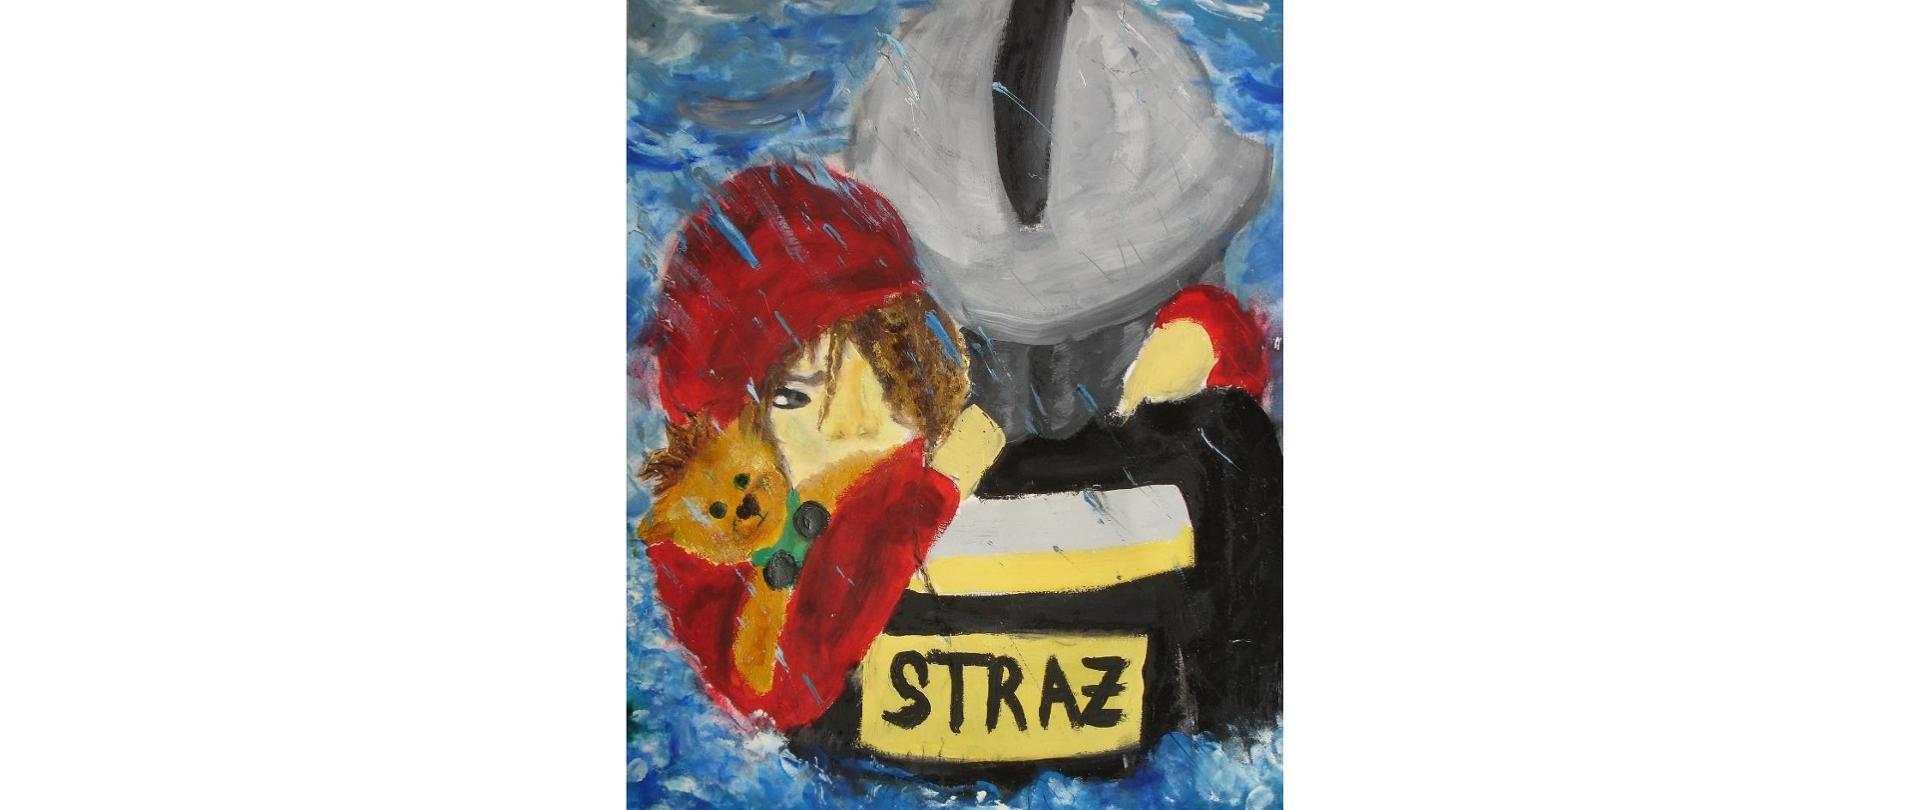 Obrazek - namalowany strażak trzymający dziecko